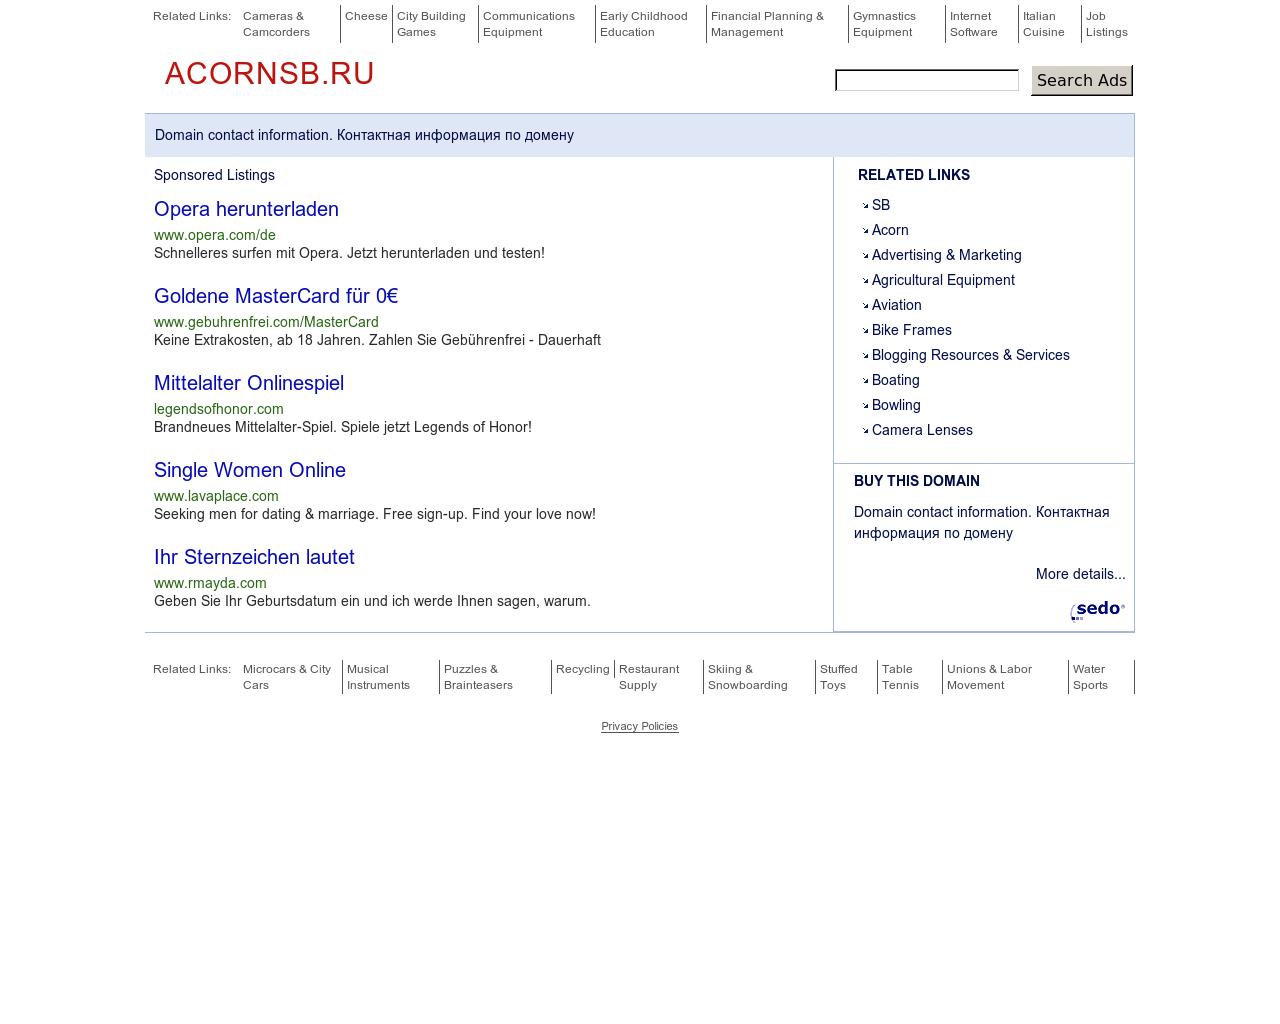 Изображение сайта acornsb.ru в разрешении 1280x1024